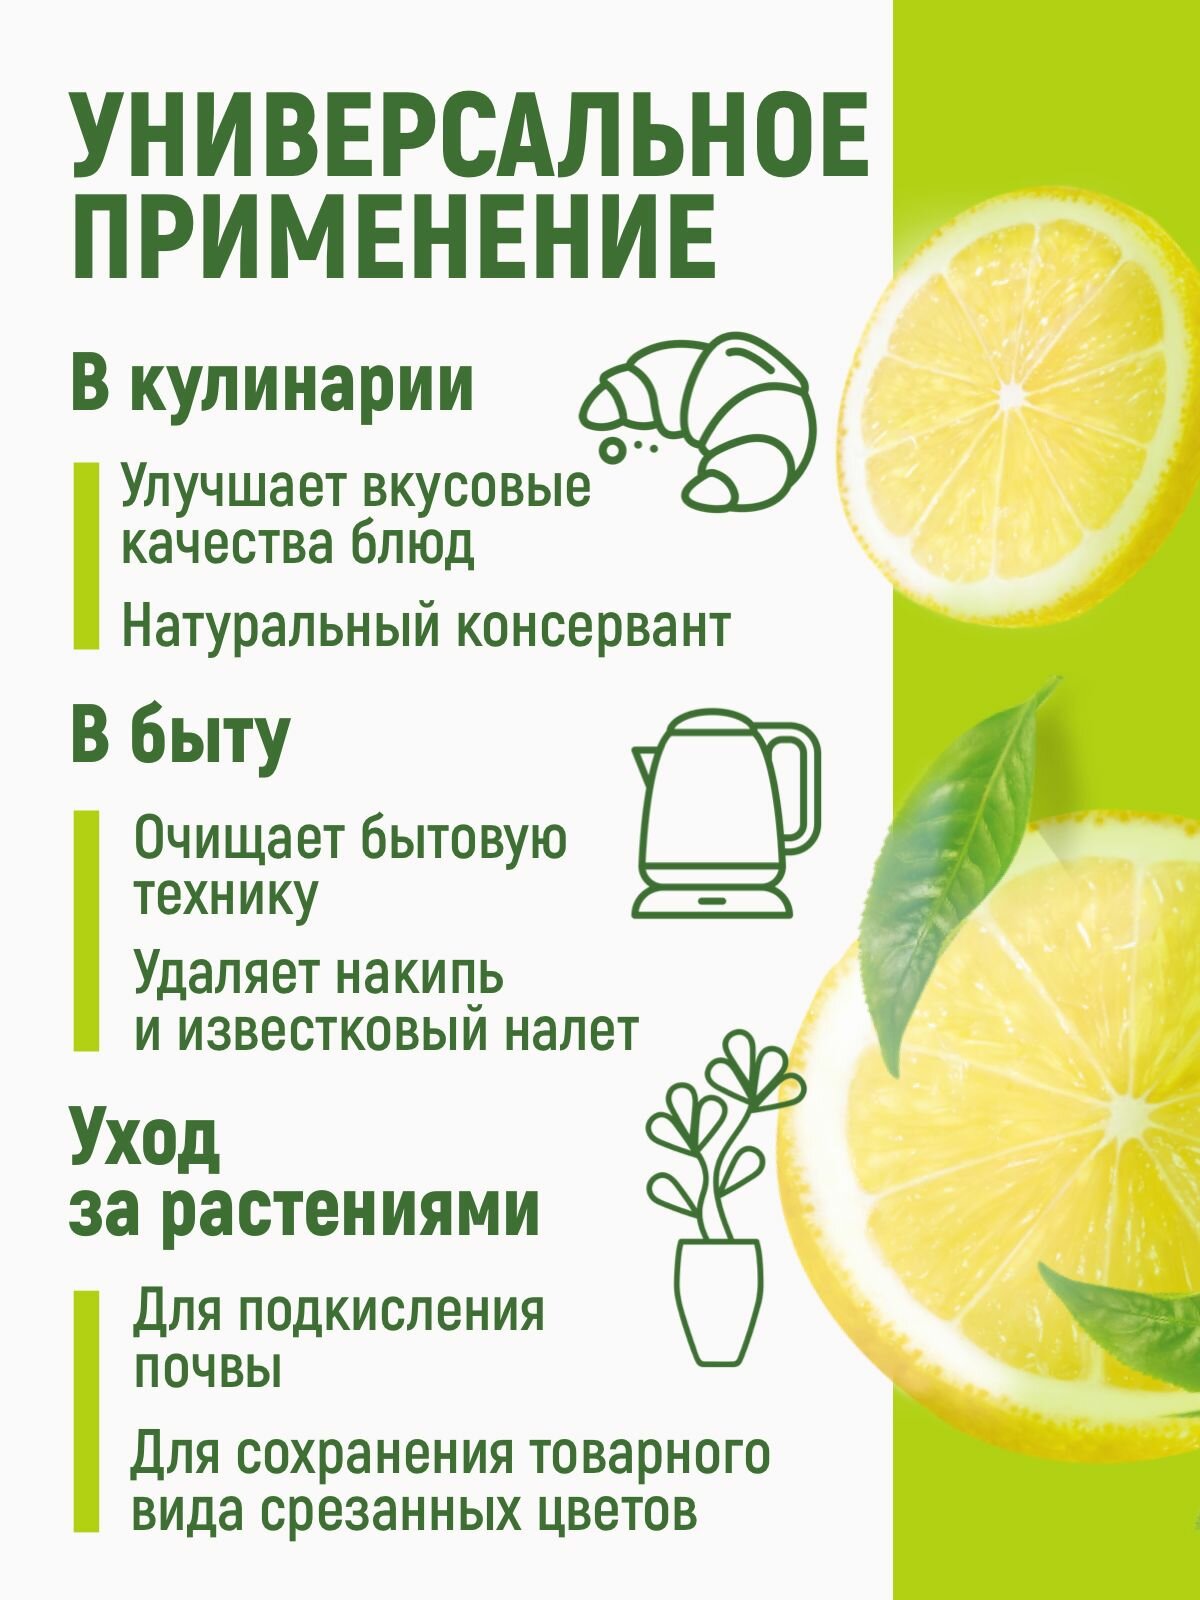 Лимонная кислота пищевая пластиковое ведерко 1кг